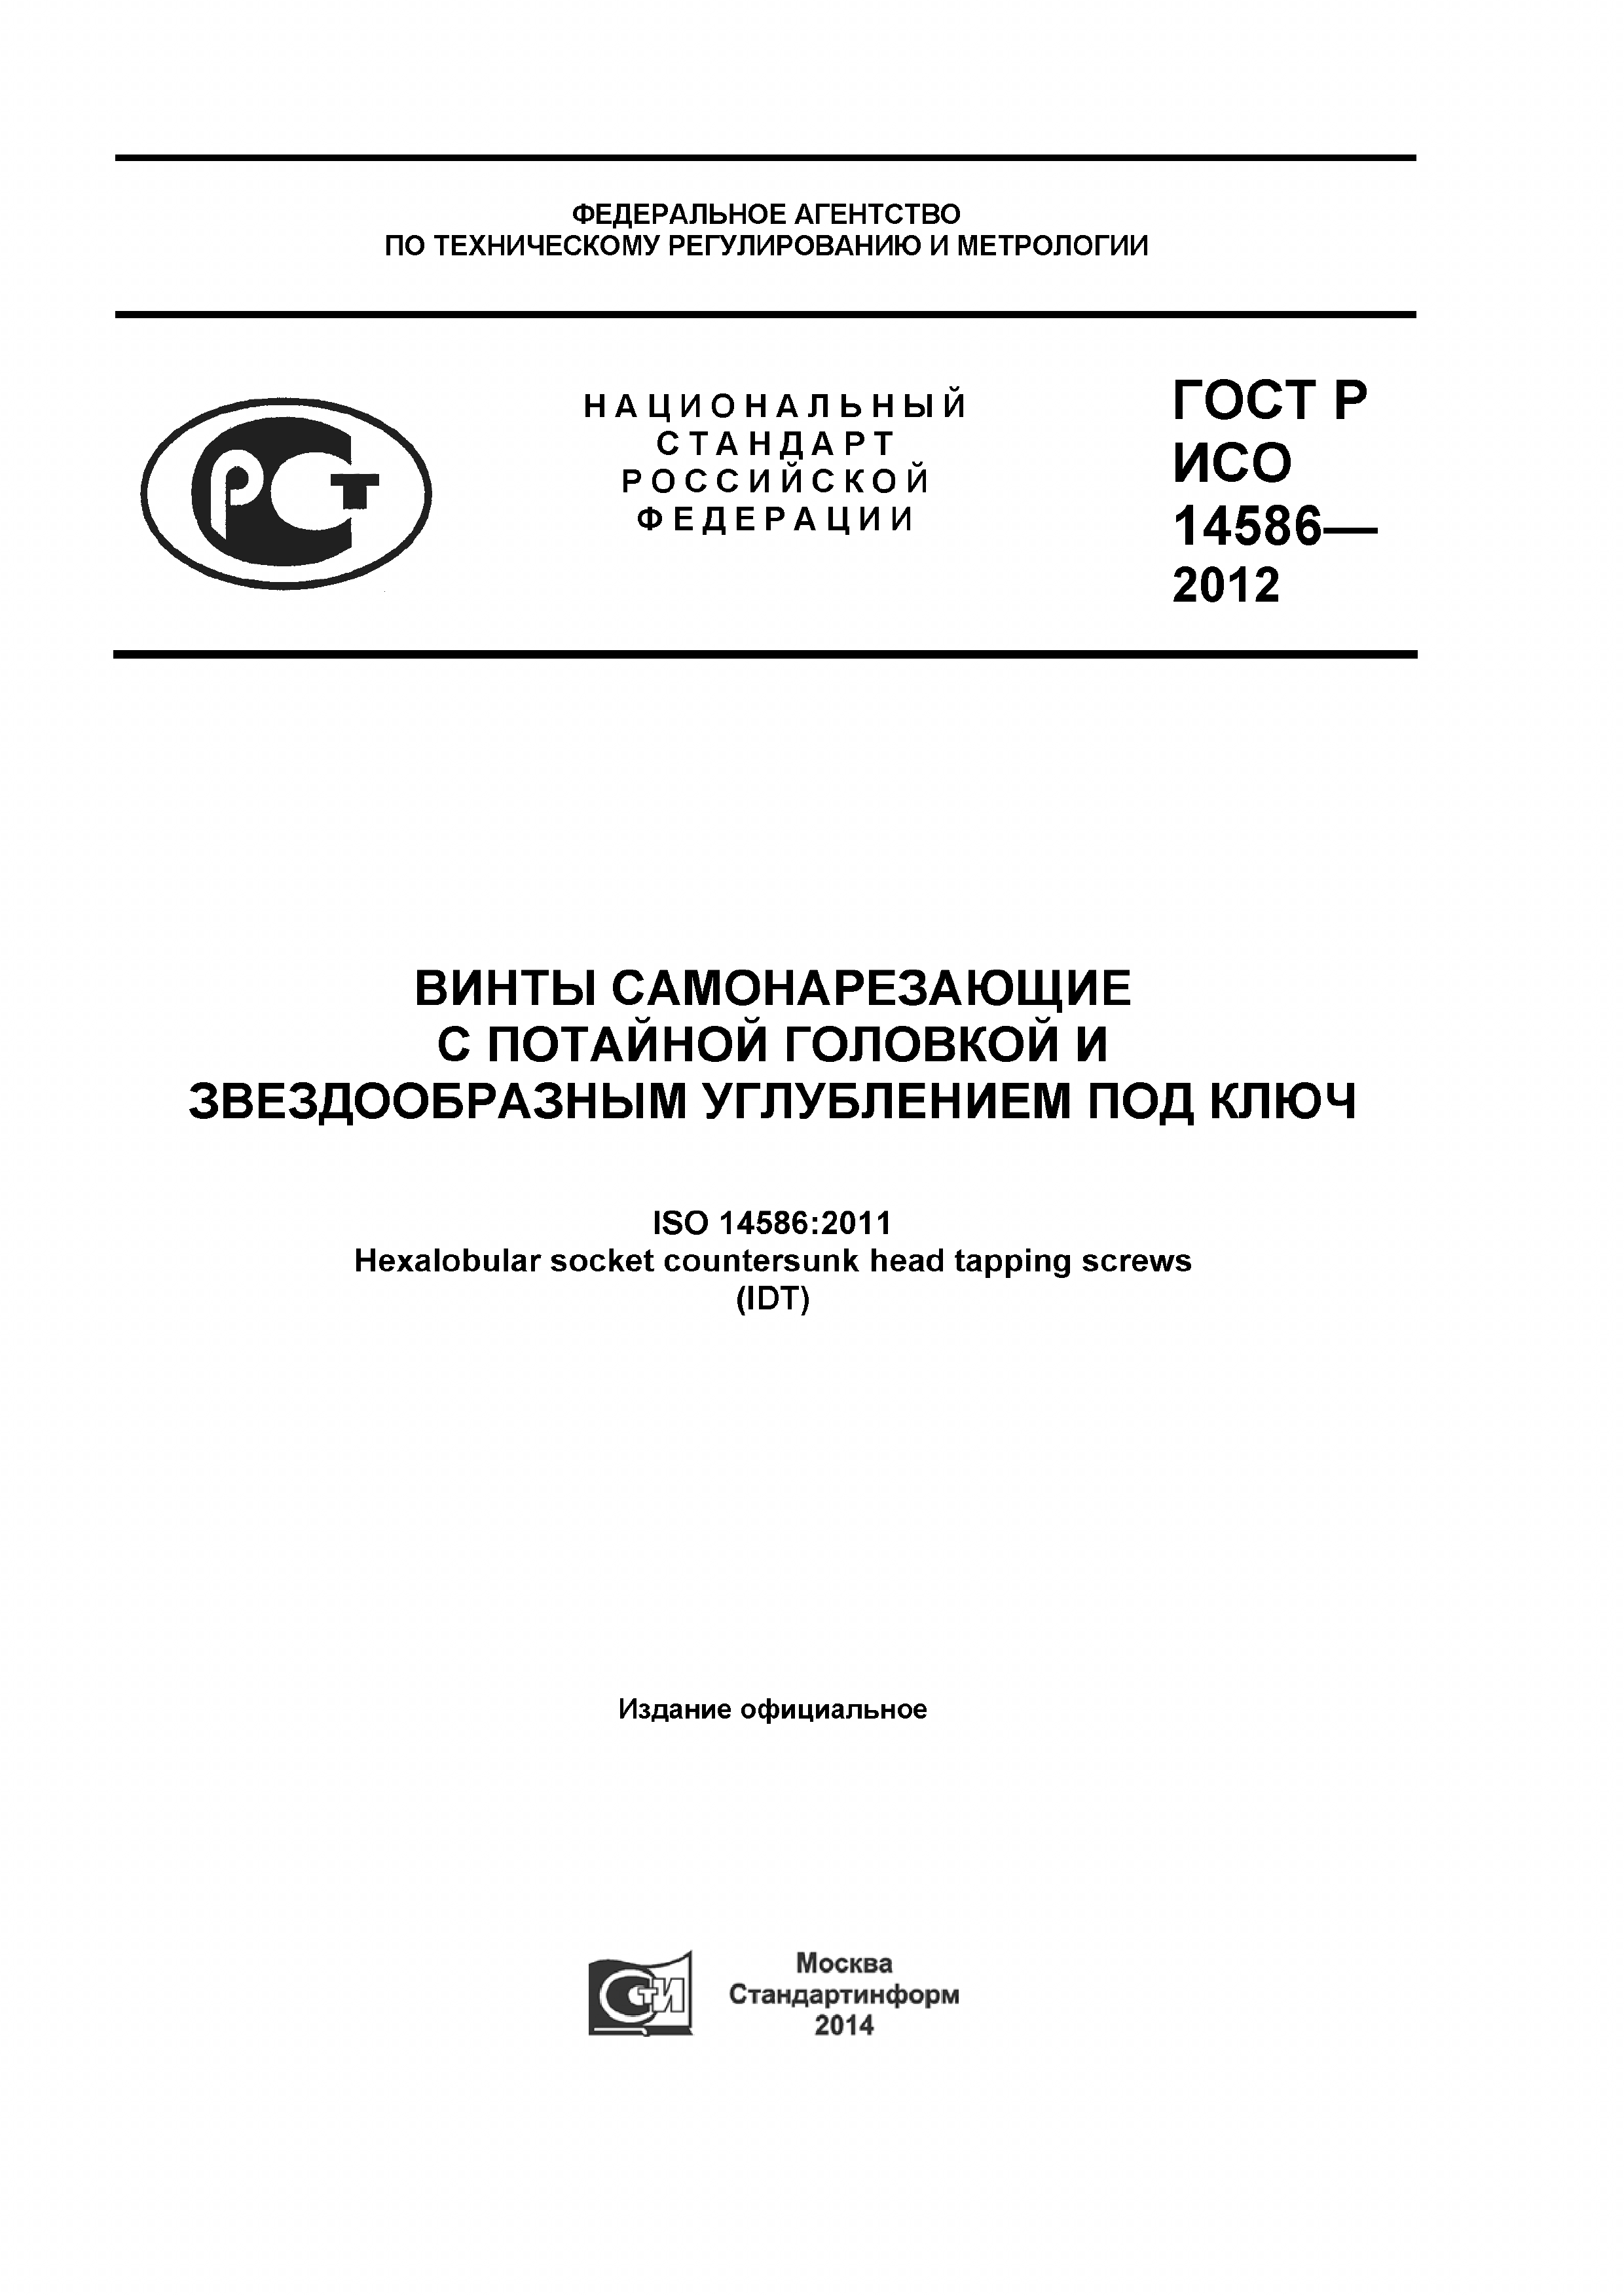 ГОСТ Р ИСО 14586-2012